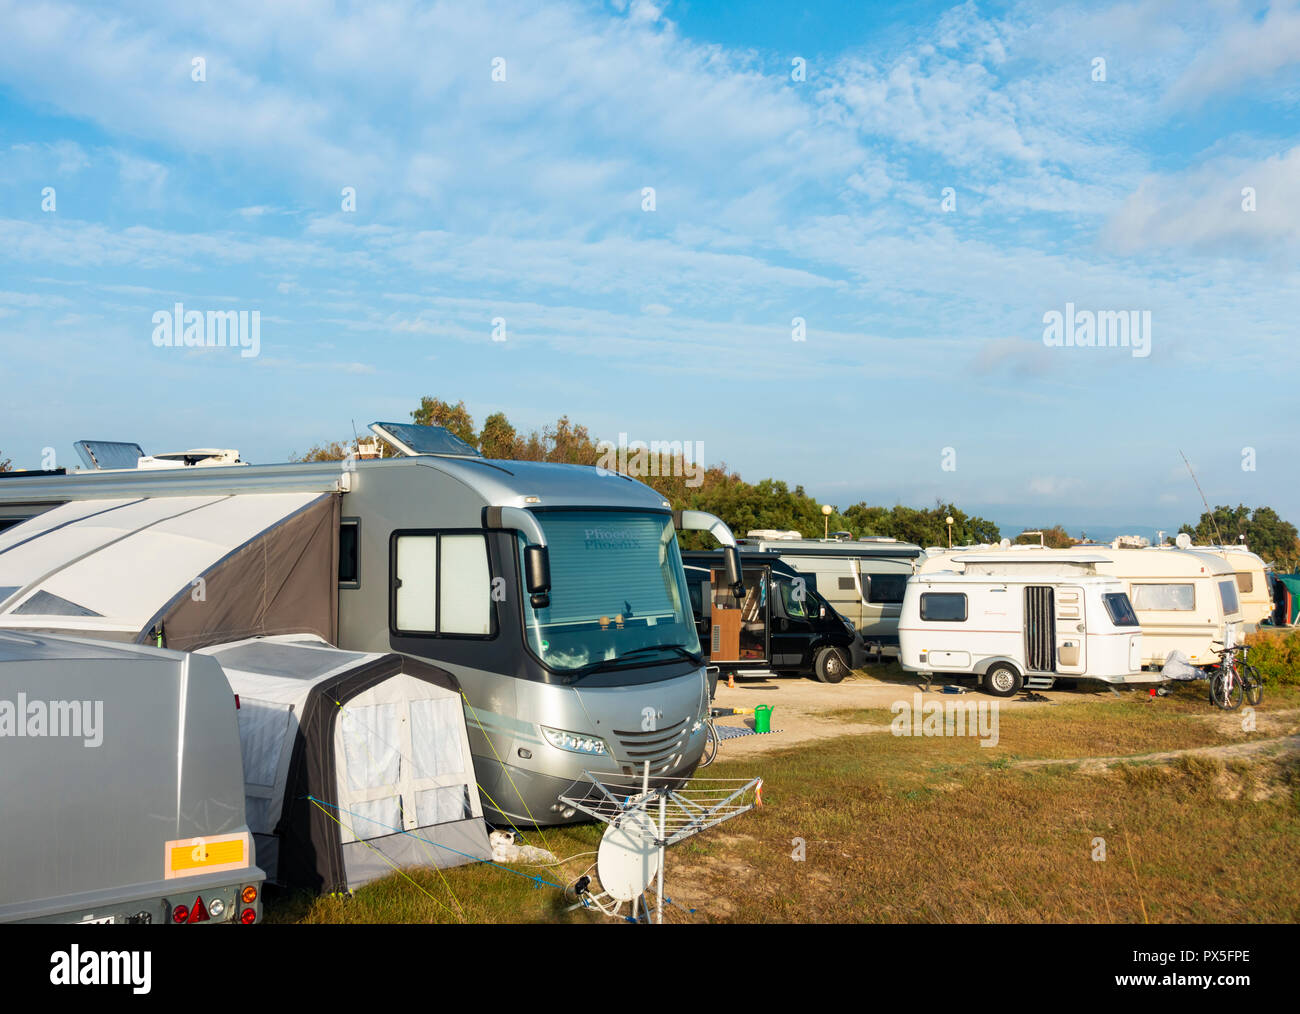 Luxury camper van and caravans on campsite near Benidorm, Spain Stock Photo